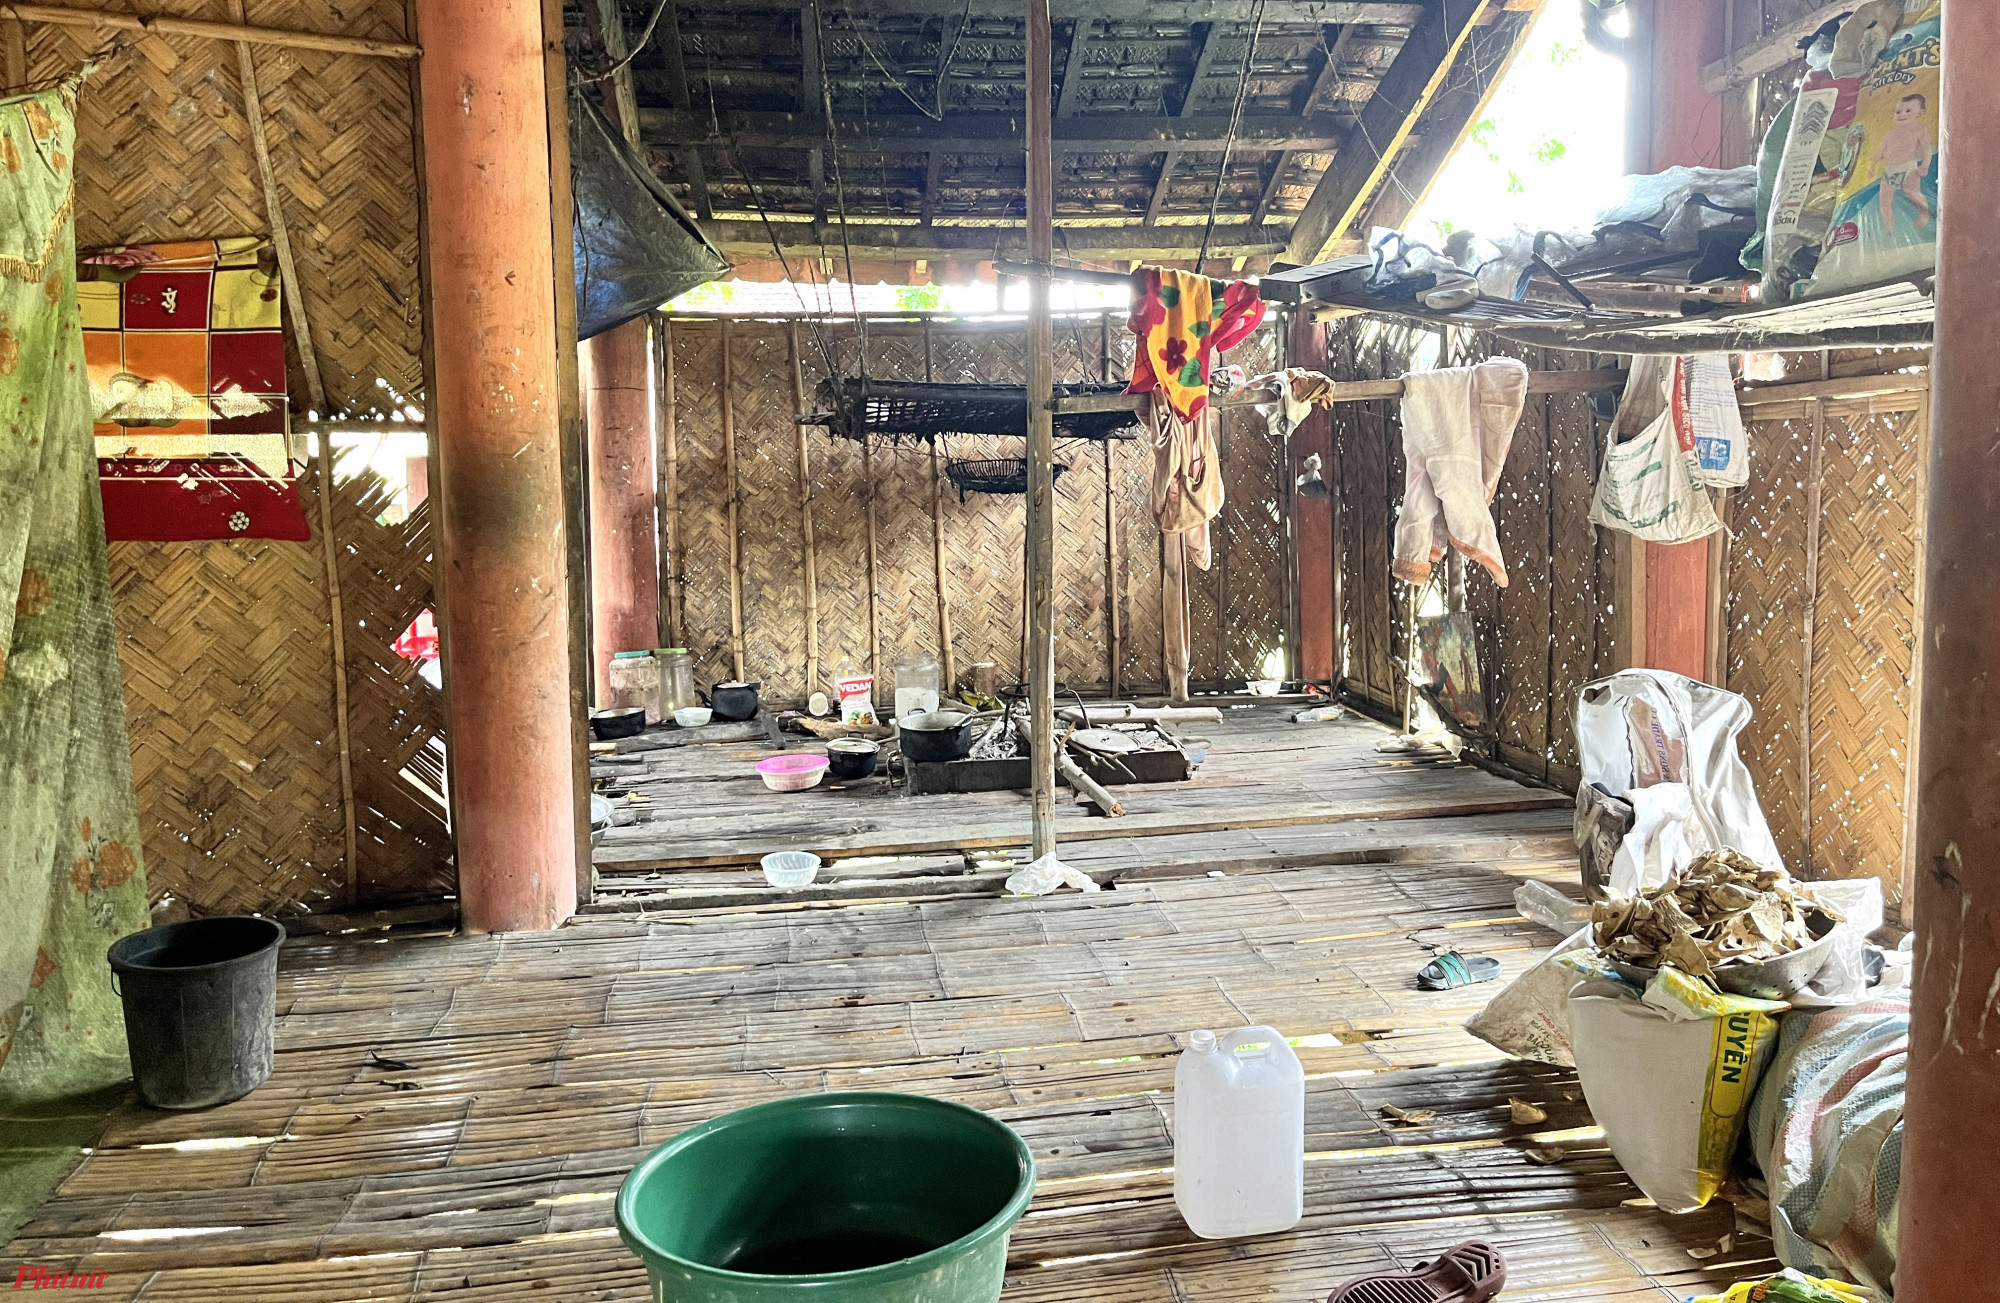 Ăn còn chưa no nên phần lớn những căn nhà sàn của người Đan Lai ở Bá Hạ chẳng có vật dụng gì quý giá bên trong - Ảnh: Phan Ngọc